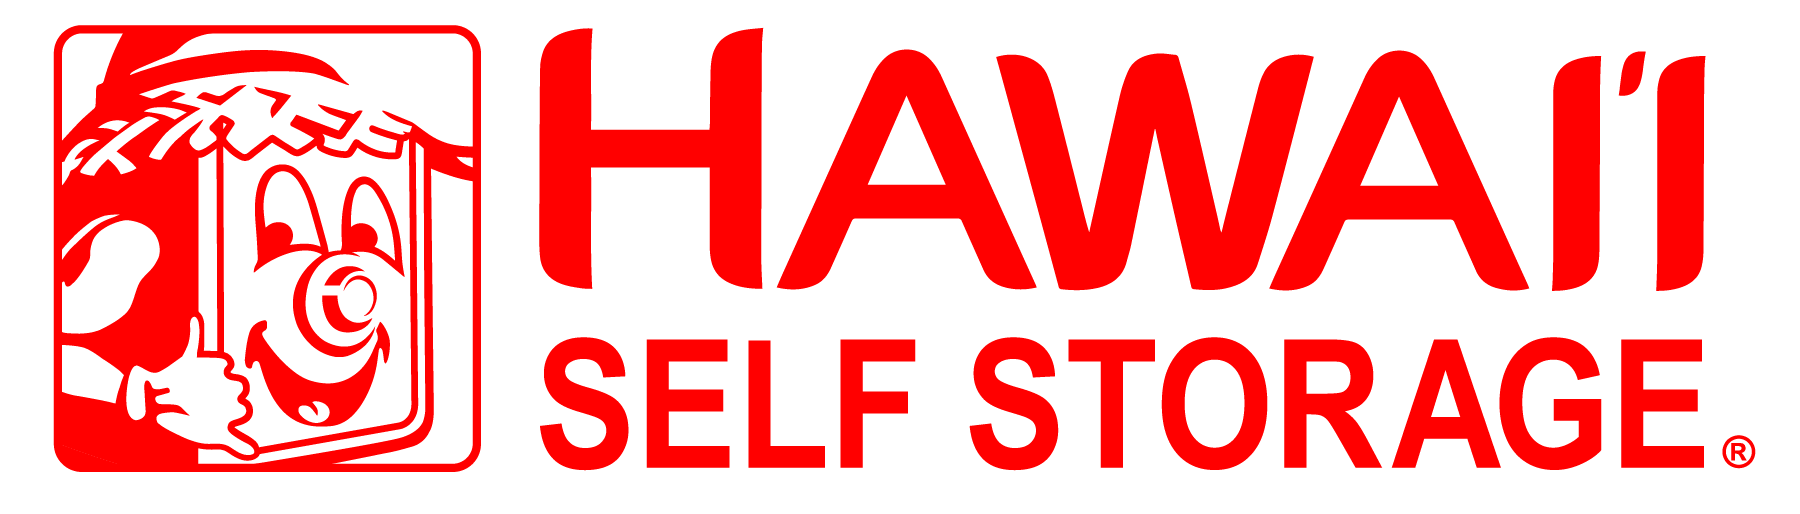 hawaii-self-storage.png 